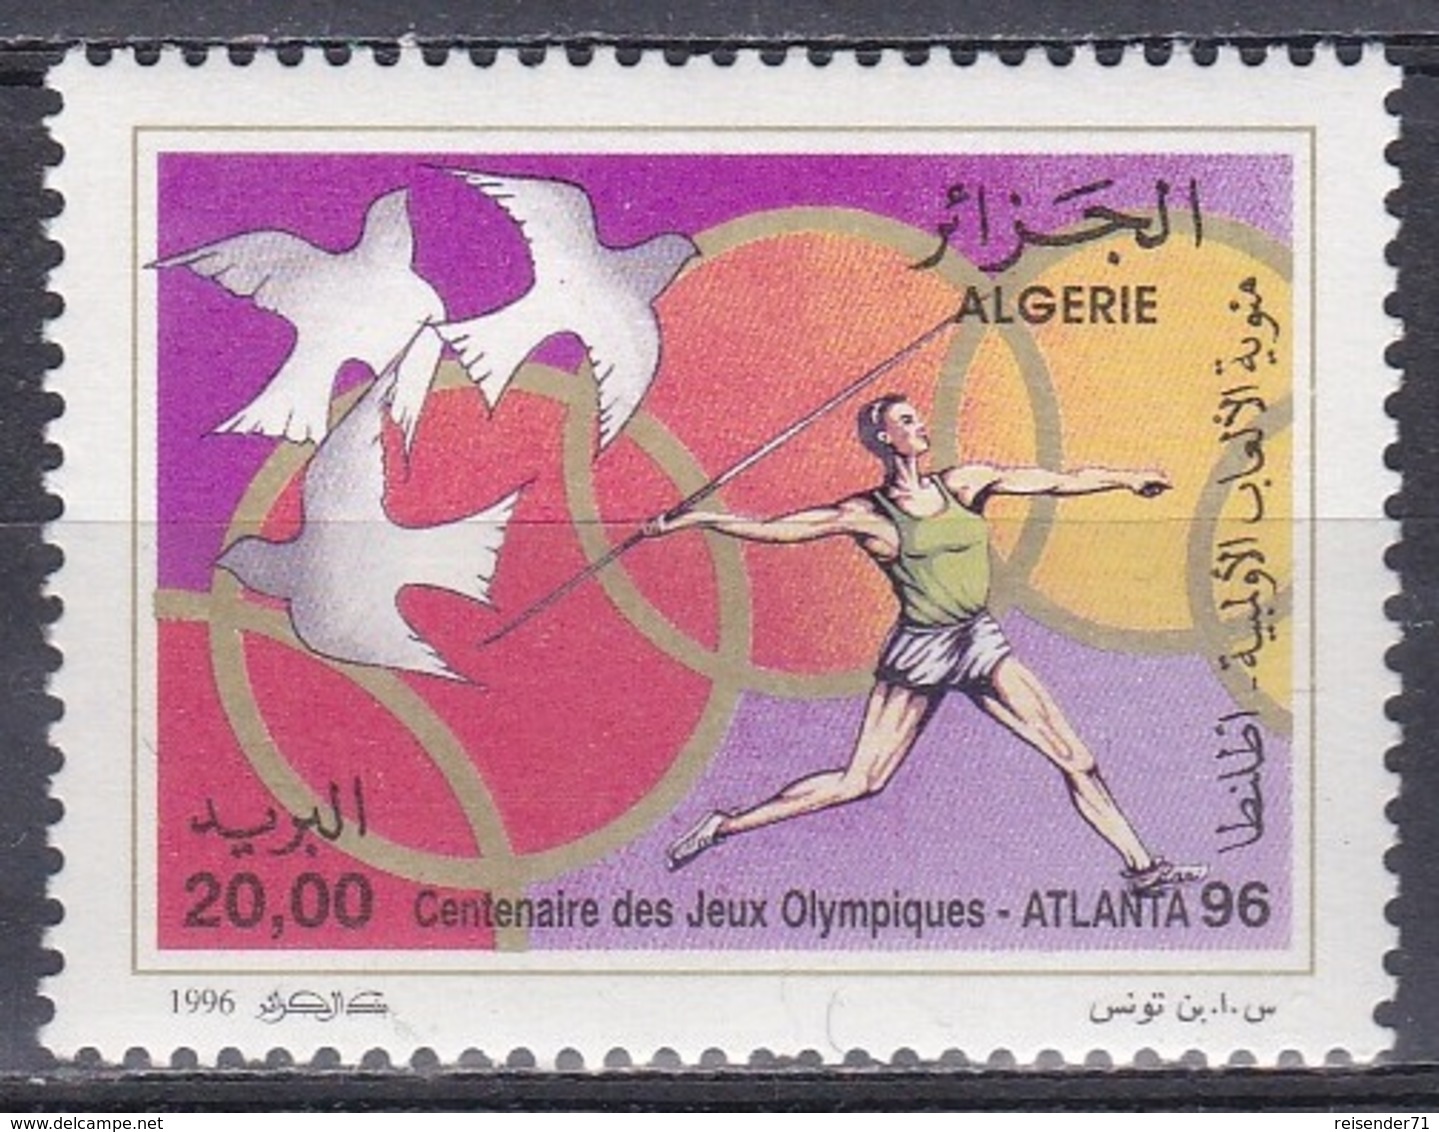 Algerien Algeria 1996, Sport Spiele Olympia Olympics Atlanta Friedenstauben Tauben Doves Speerwerfen, Mi. 1149 ** - Algeria (1962-...)